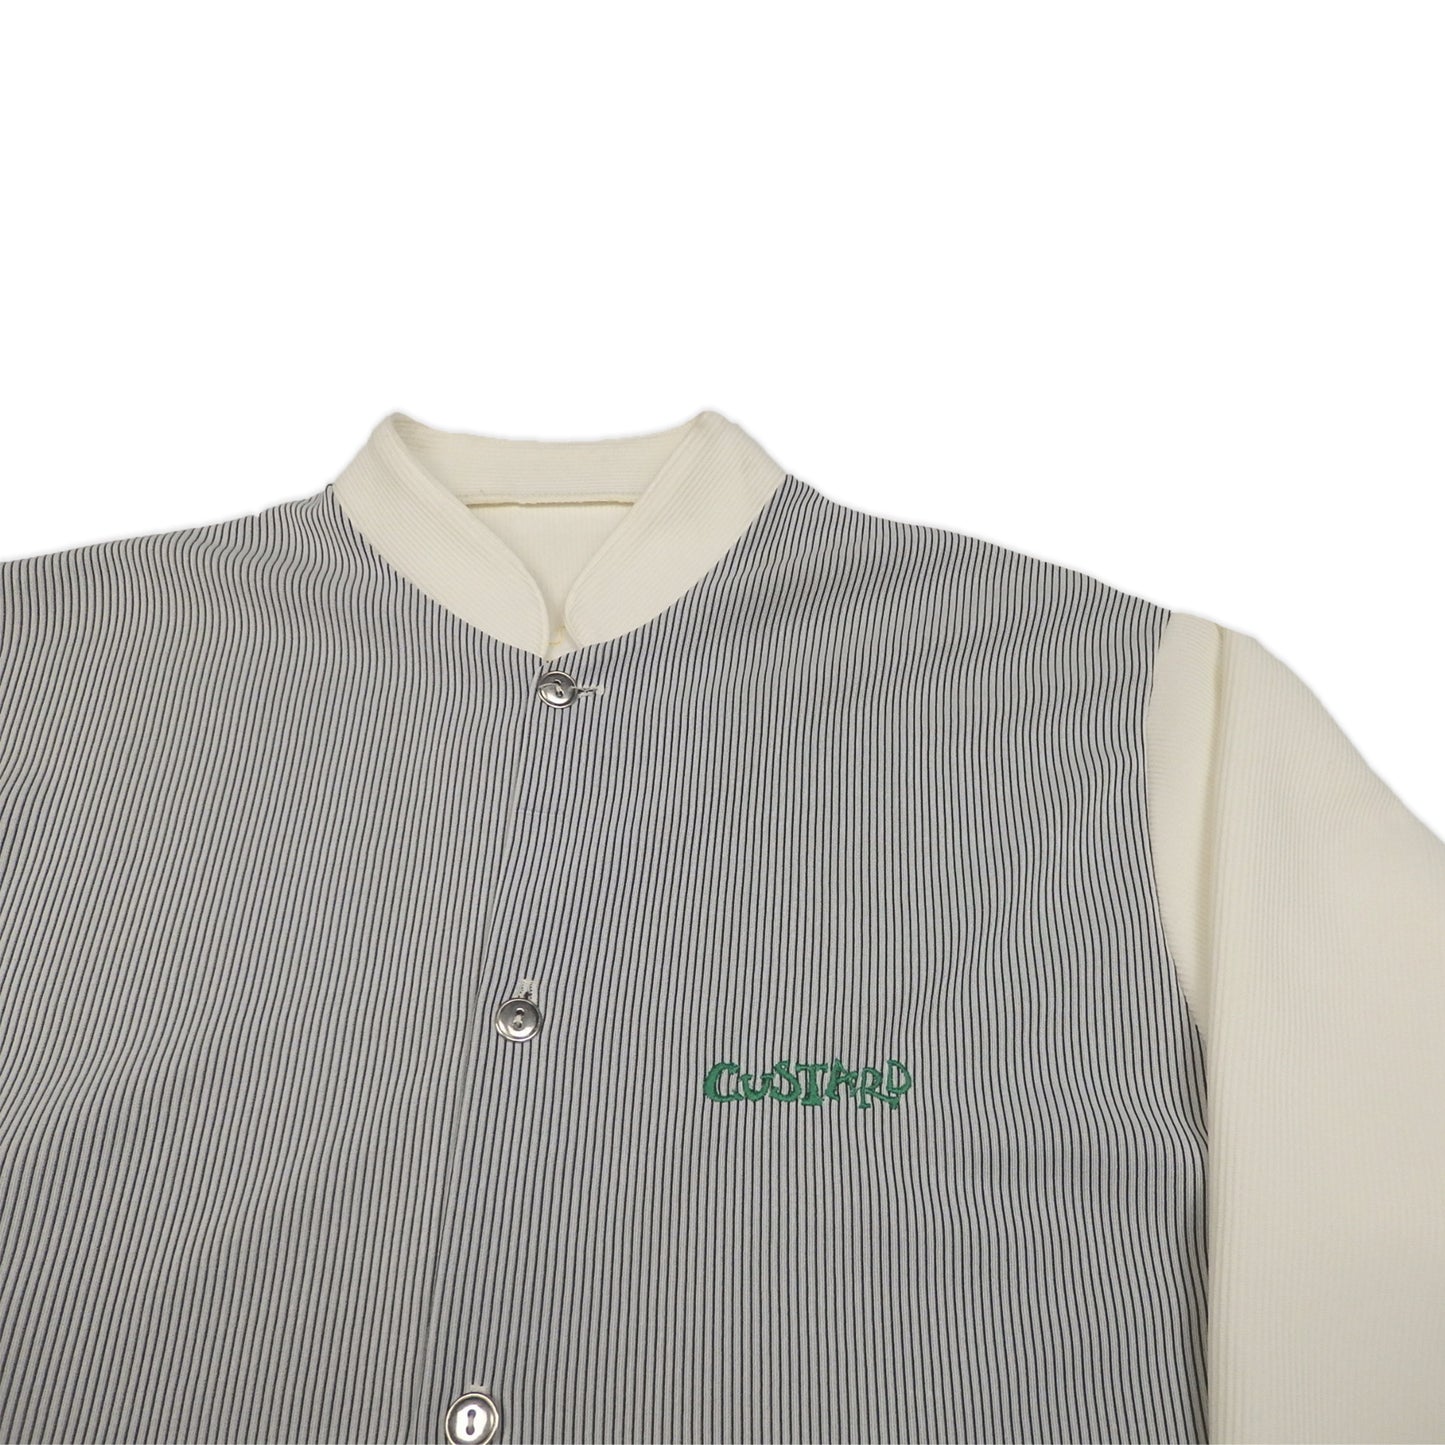 Custard Reclaimed High Collar Shirt | Size Large